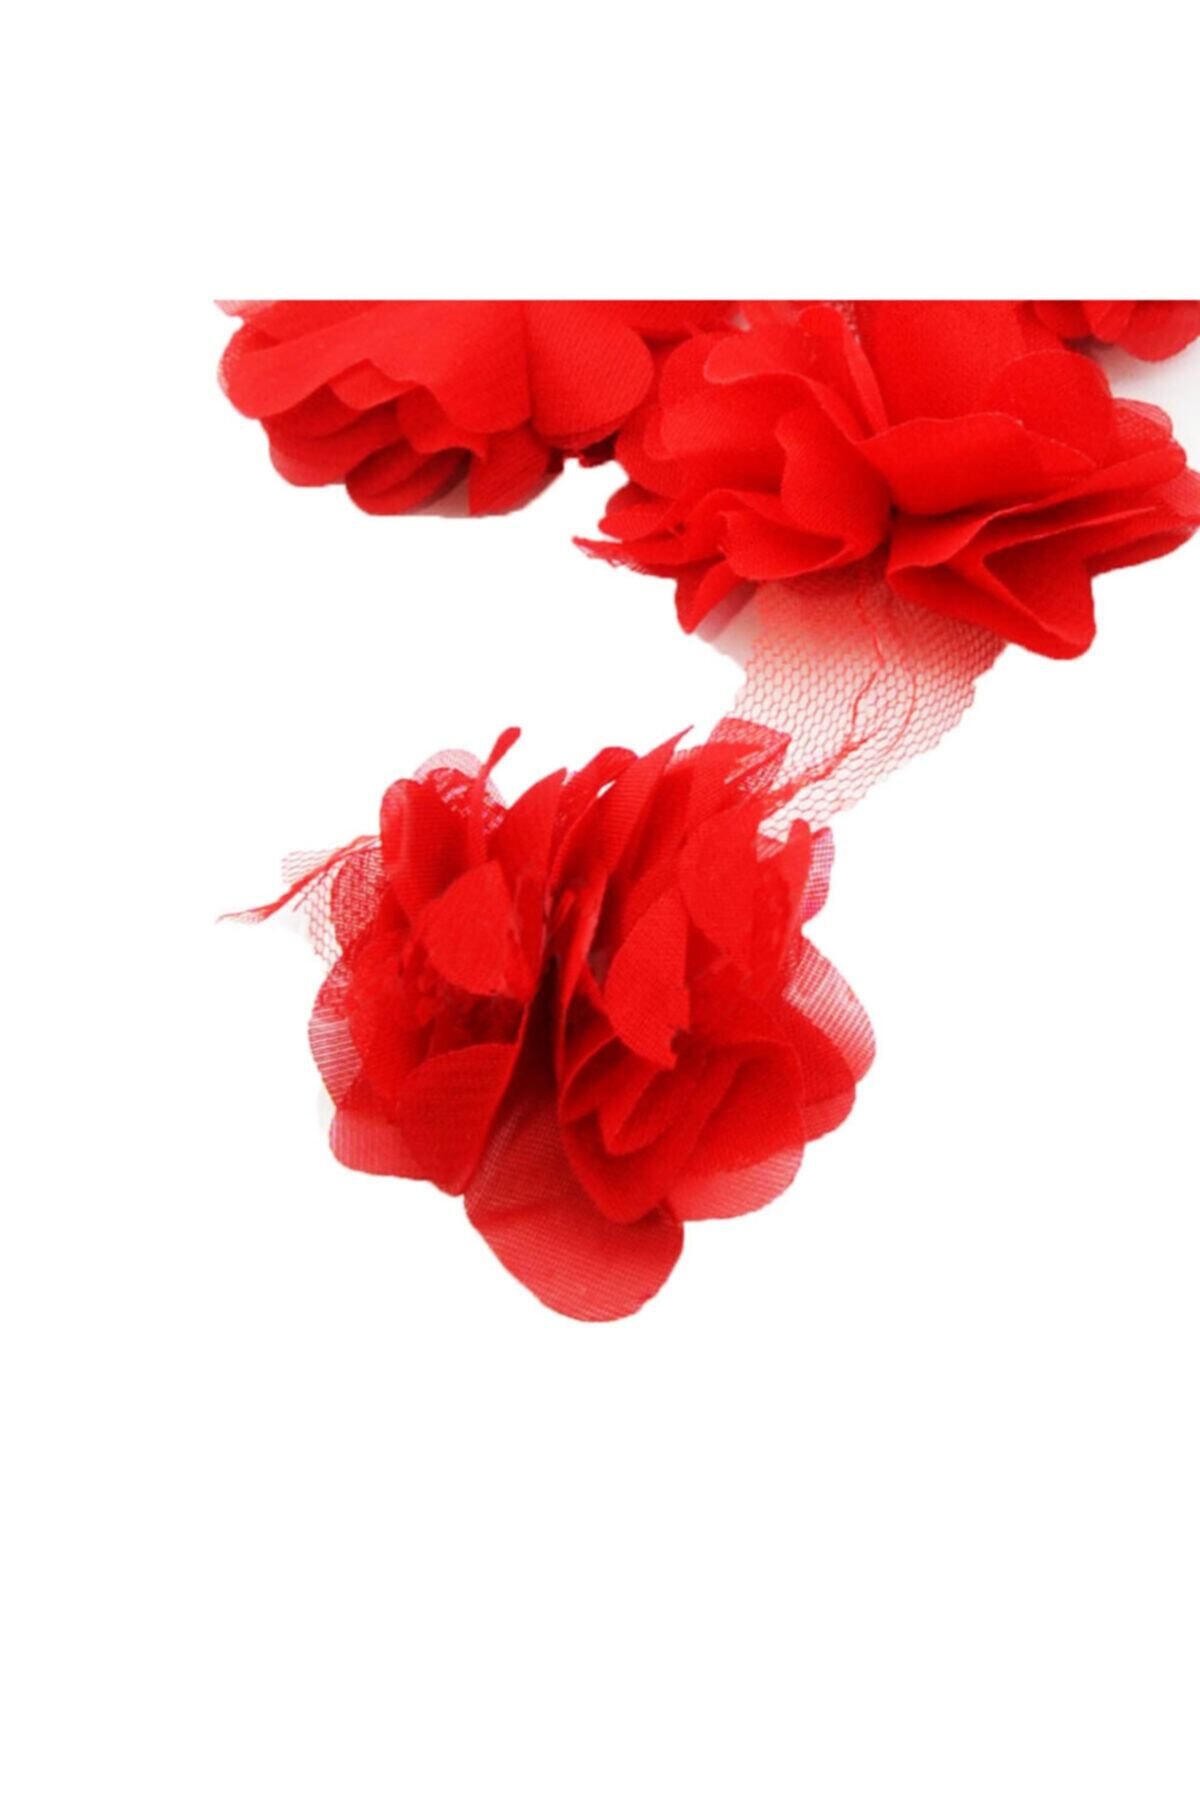 Aker Hediyelik Kırmızı Lazer Gül 3m Lazer Kesim Gül Süsleme Paketleme 36 Adet Organze Kumaş Yapay Çiçekler